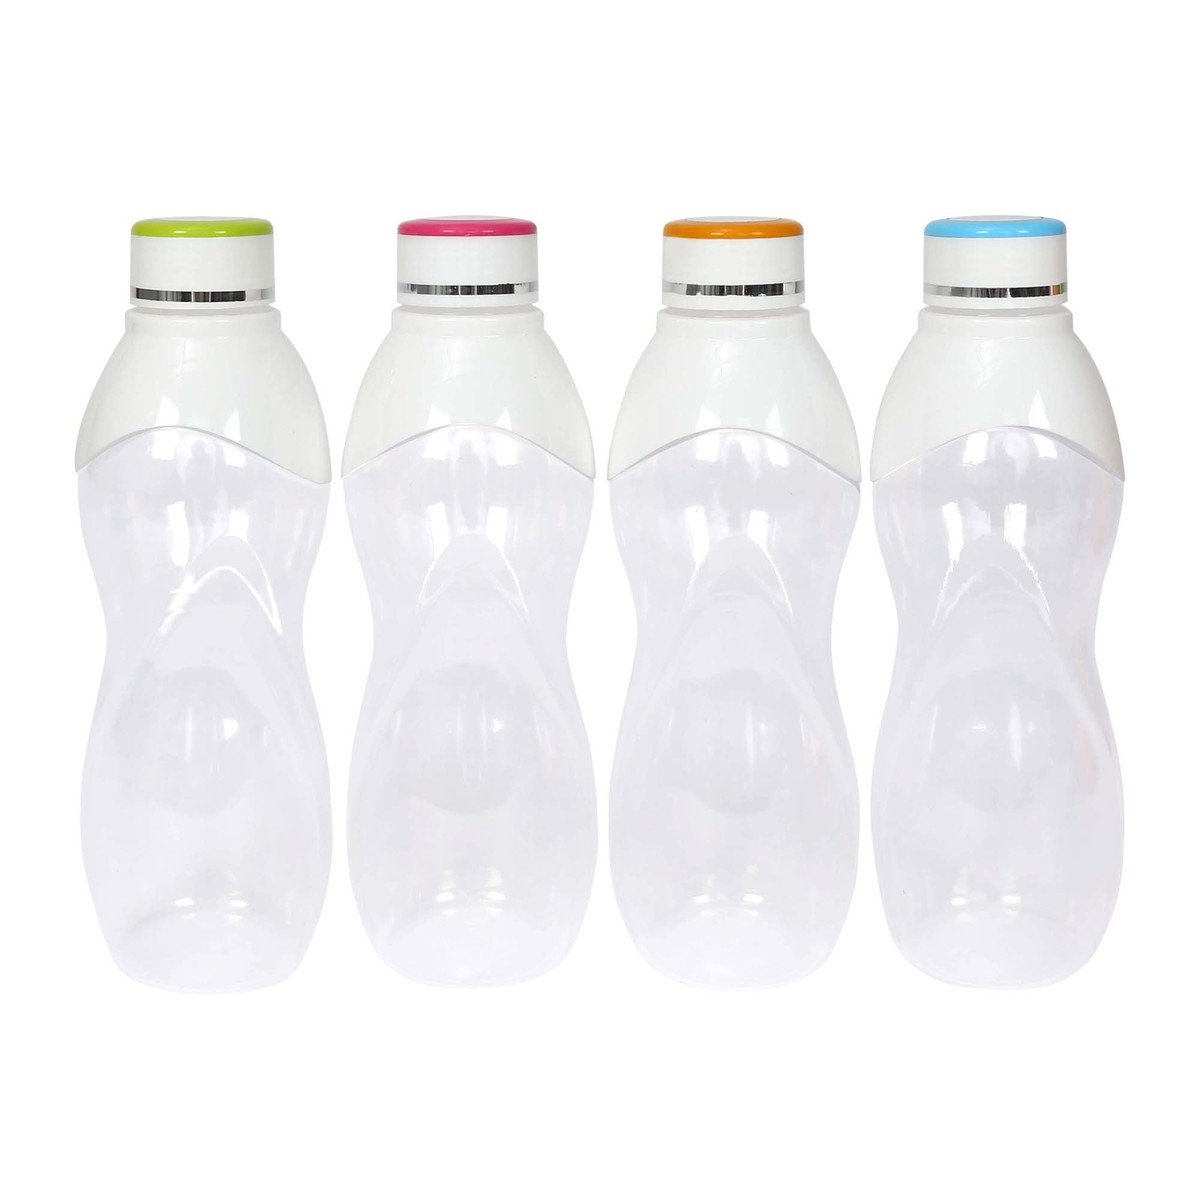 Joyful Plastic Transparnt Bottle 4pcs Assorted Colors